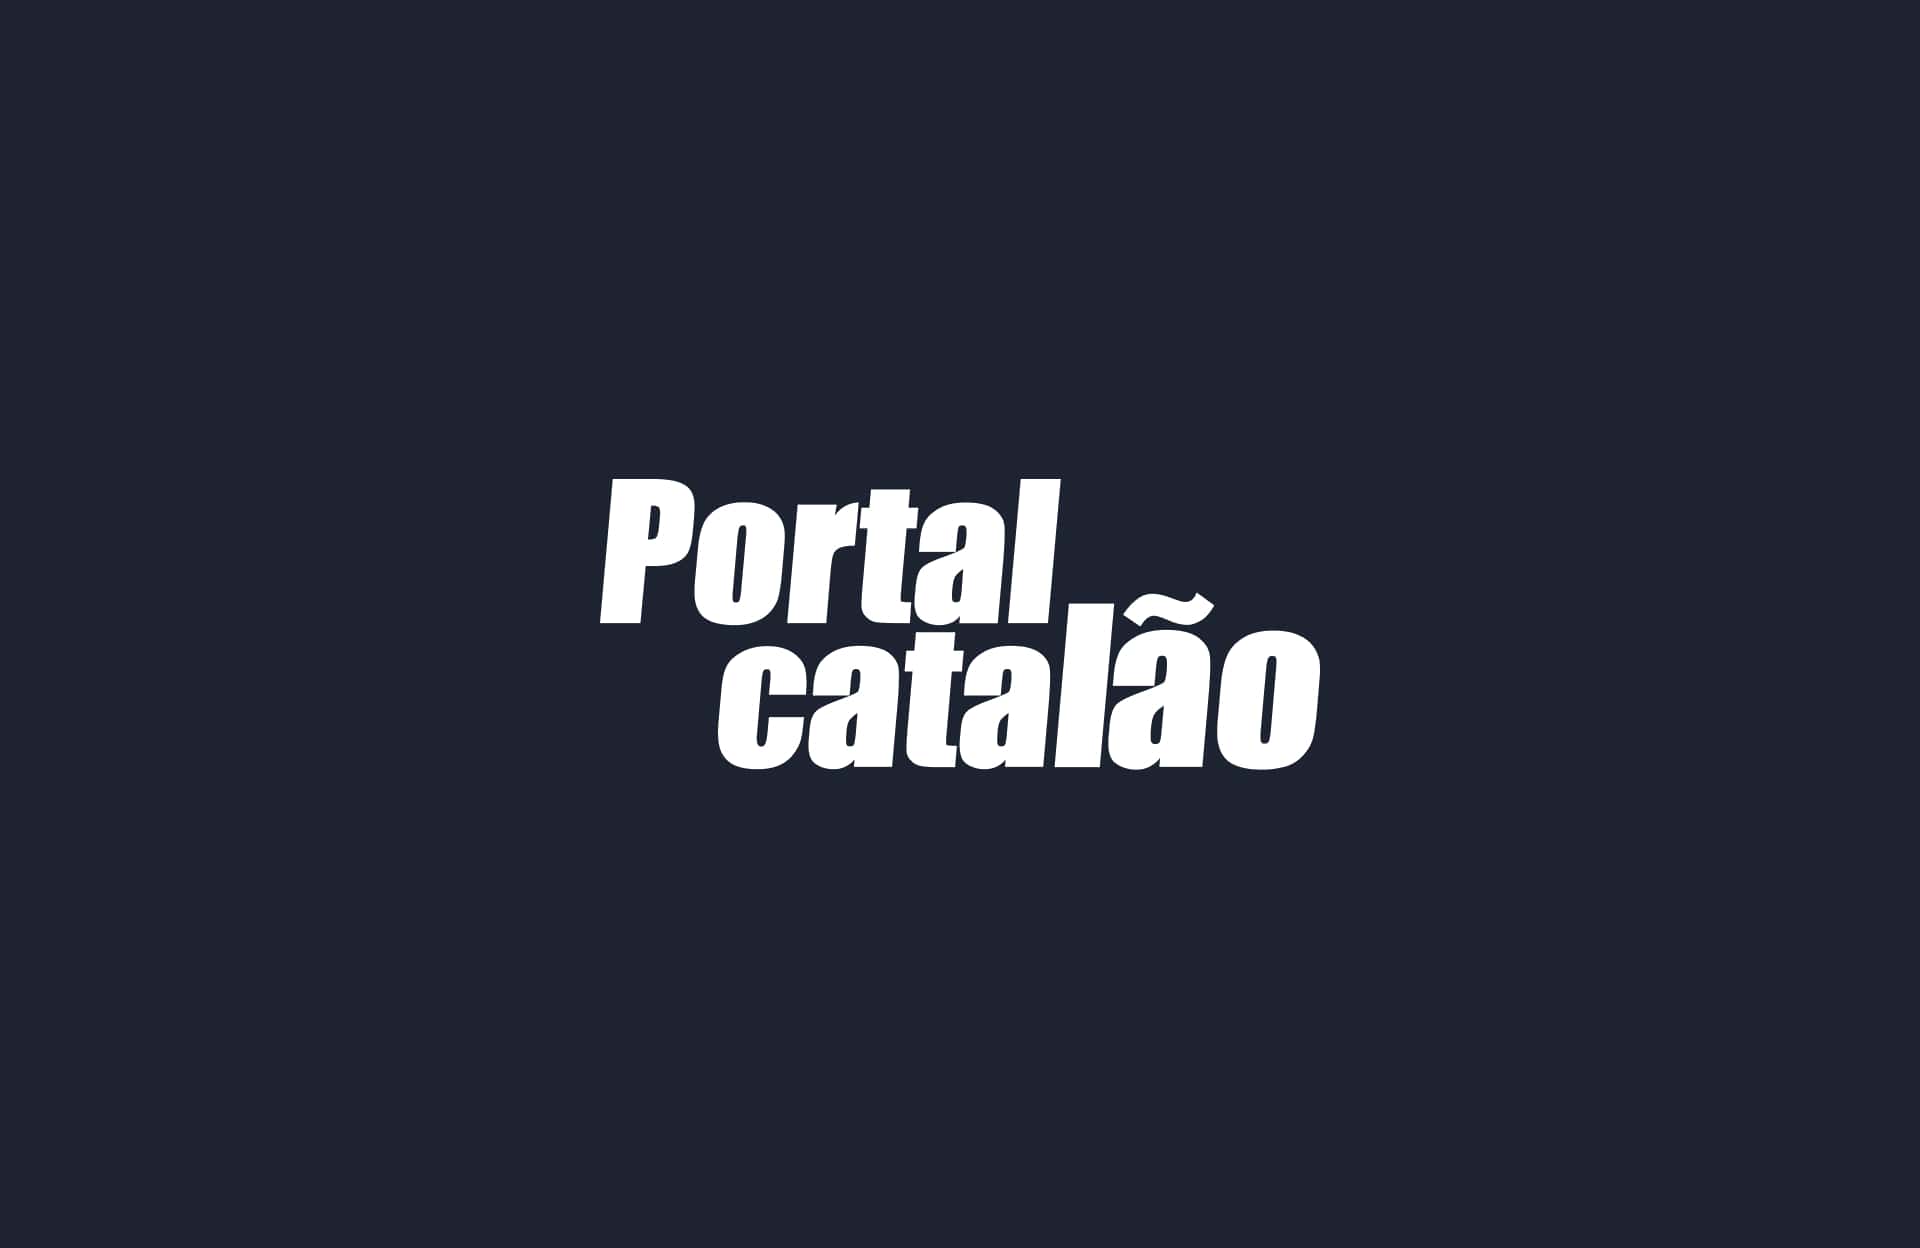 (c) Portalcatalao.com.br